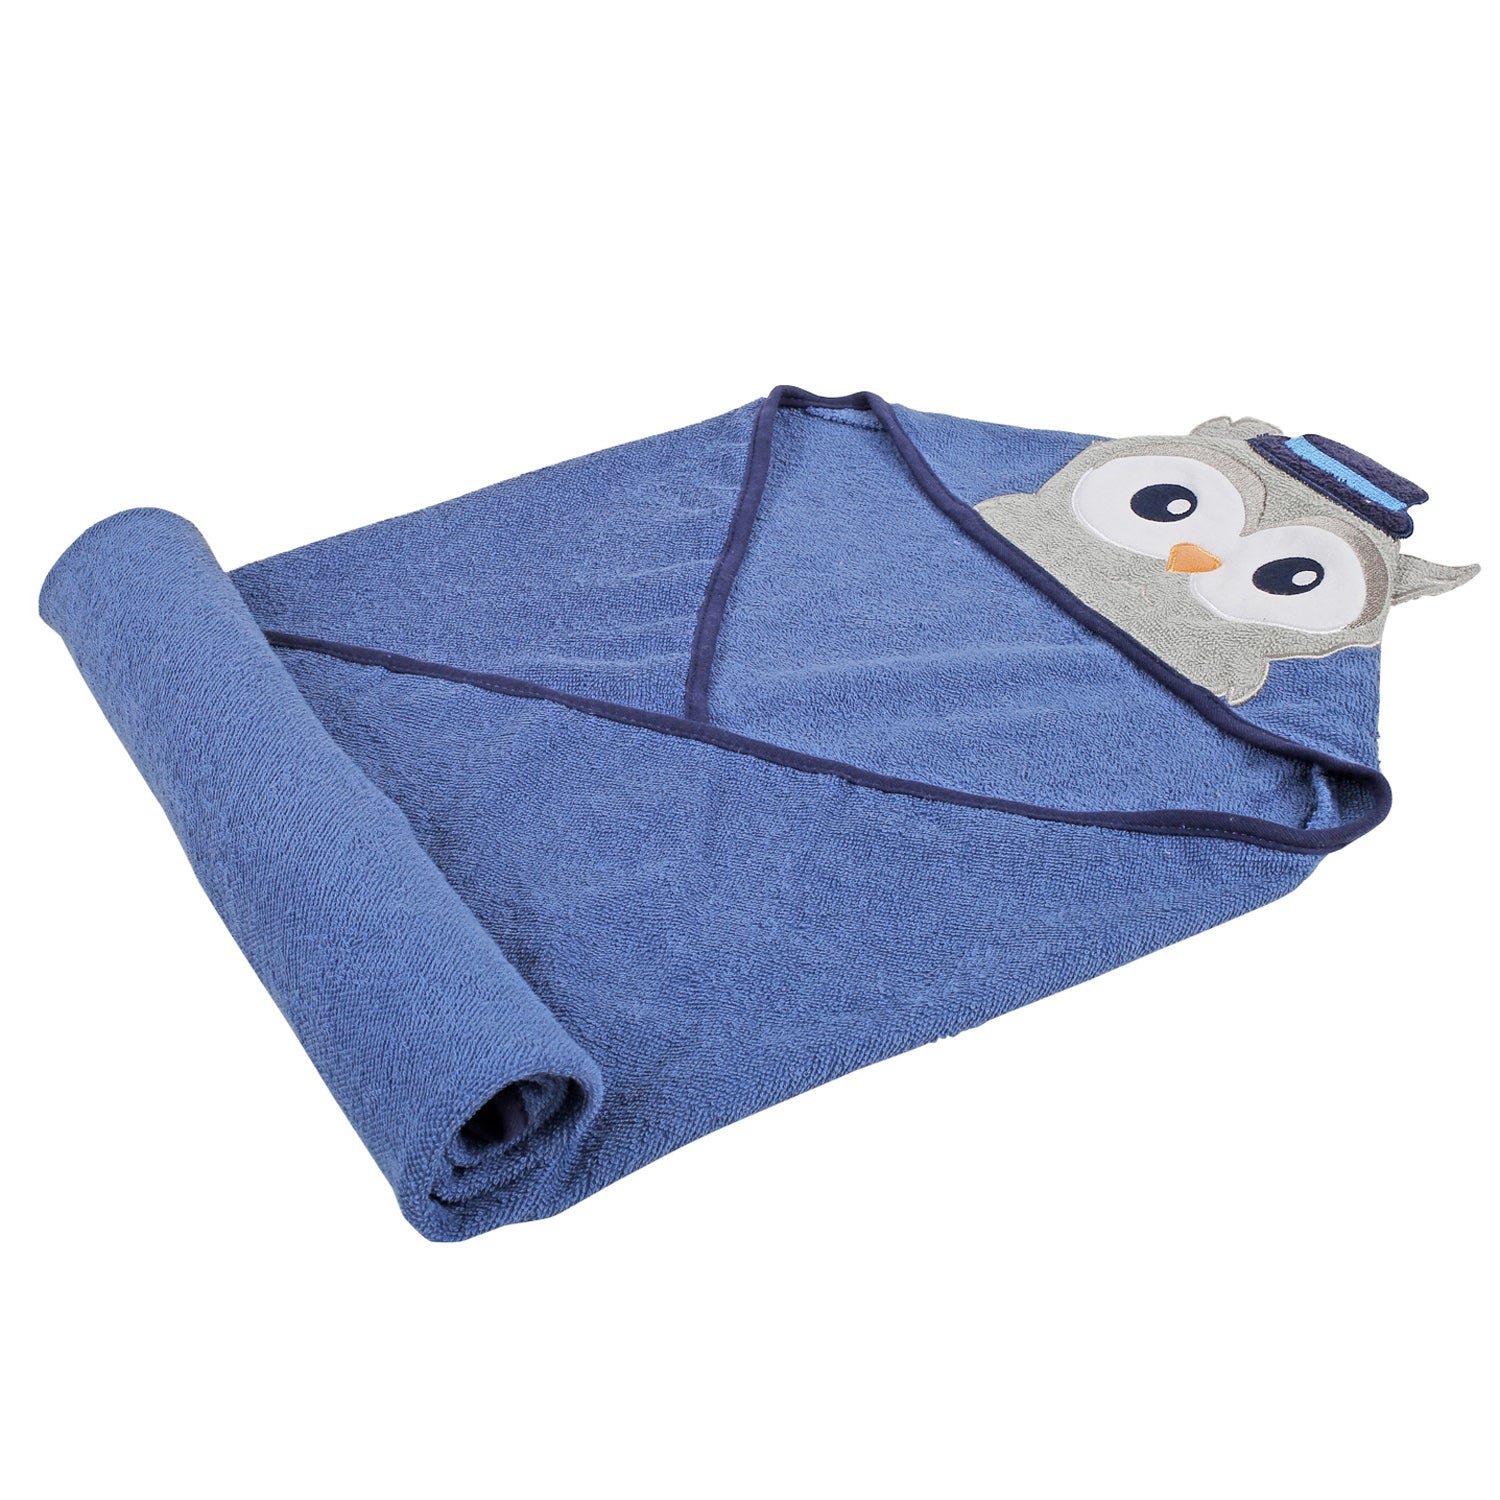 Baby Moo Mr. Owl Blue Hooded Towel